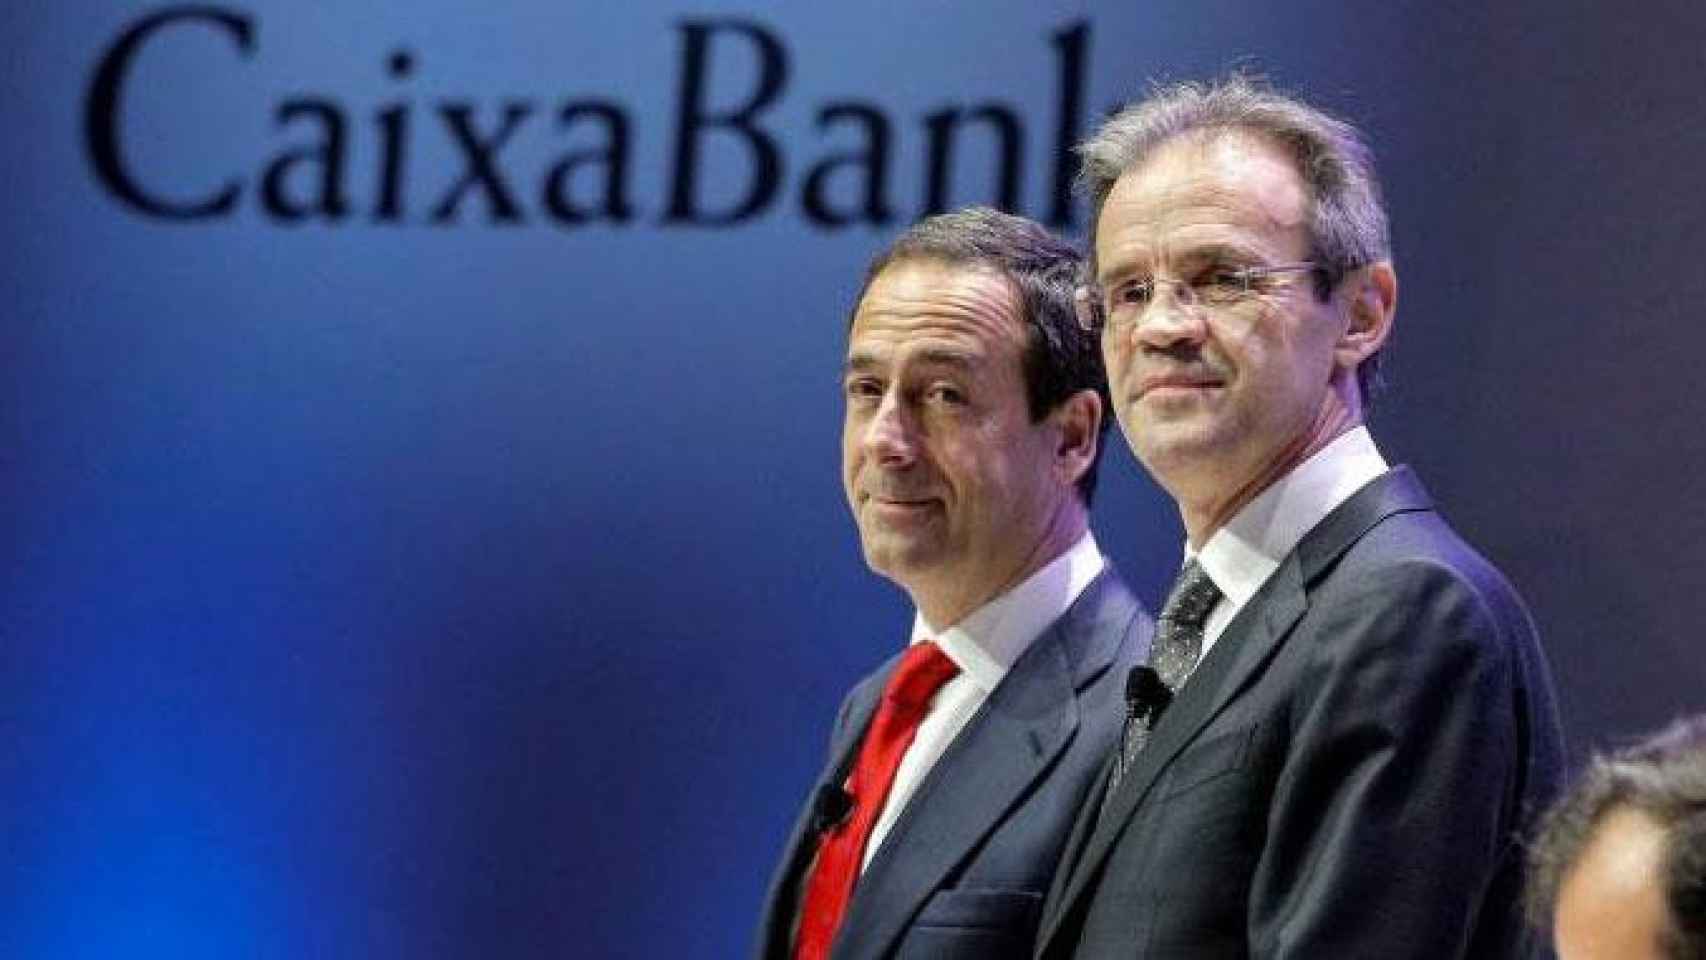 Gonzalo Gortázar, consejero delegado de Caixabank, y Jordi Gual, presidente de la entidad, en una imagen de archivo